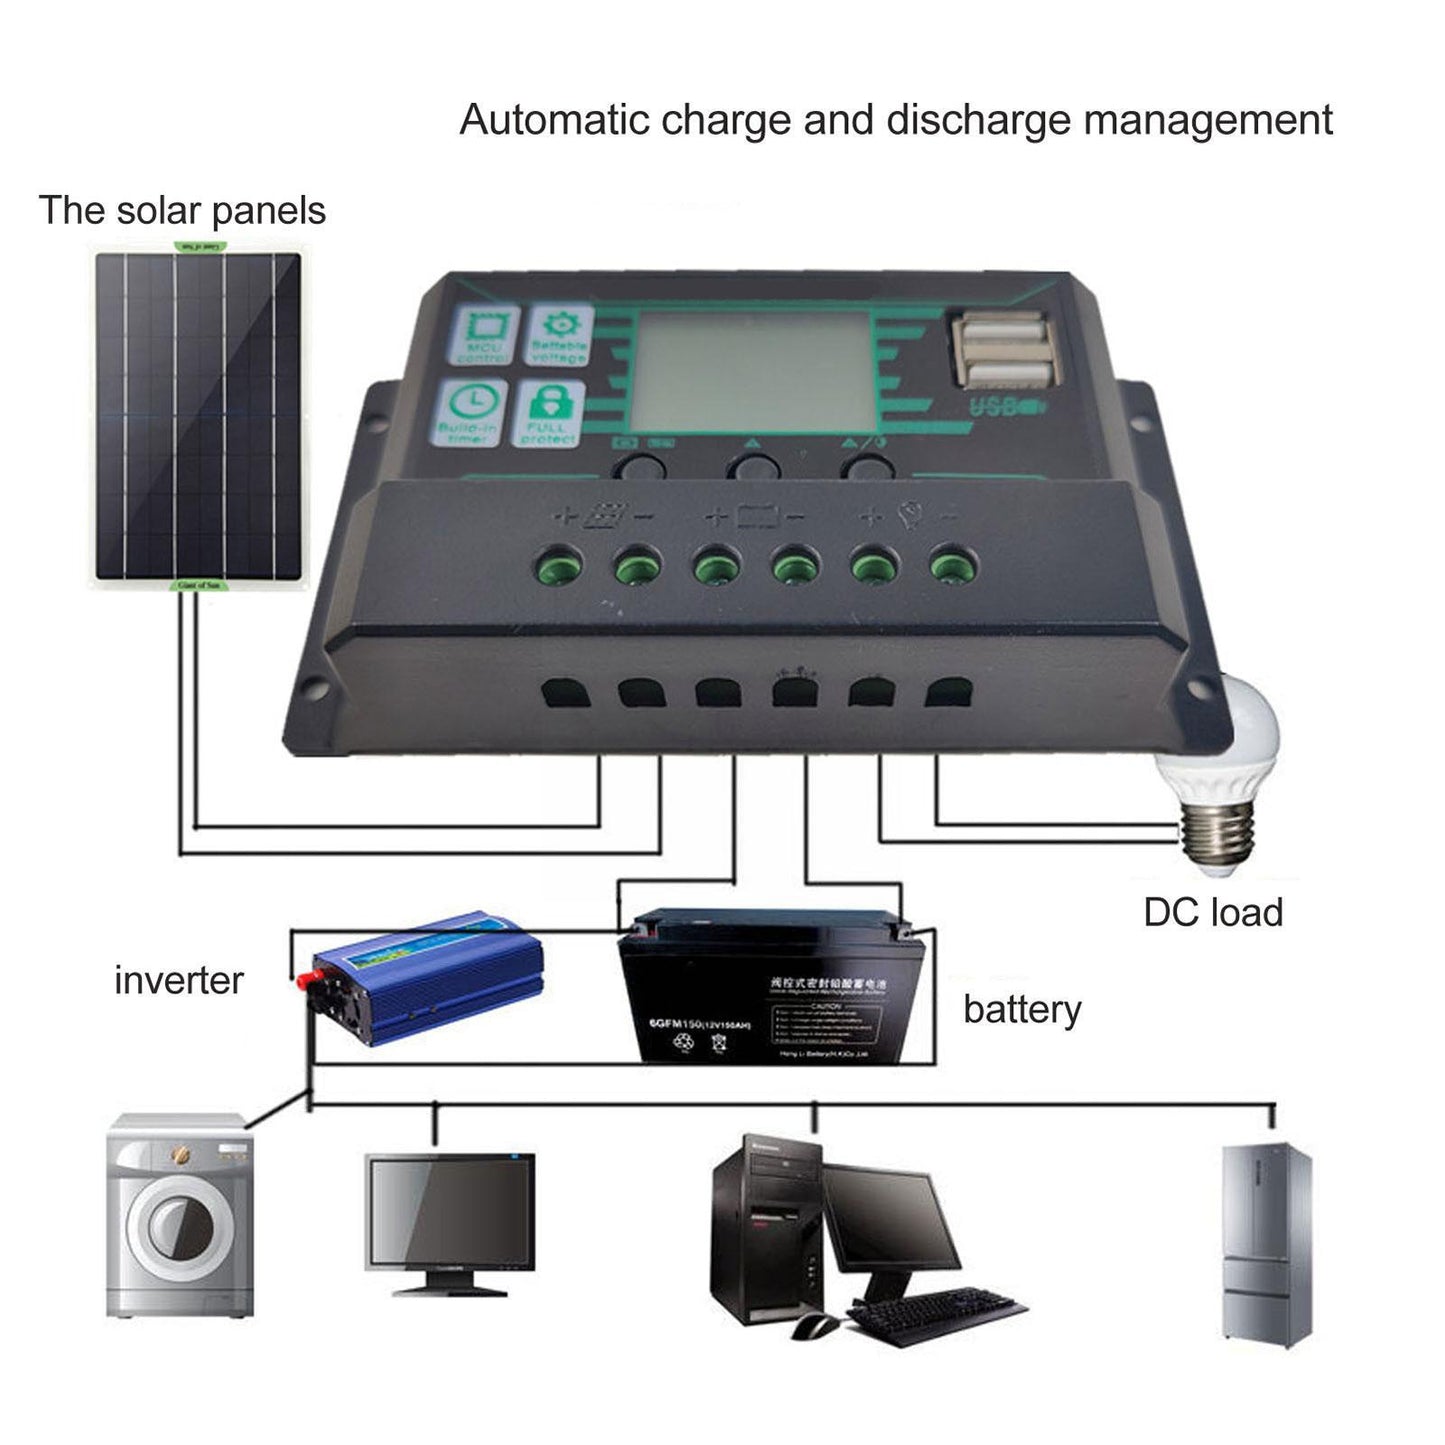 MPPT 10/20/30/60/100A contrôleur de Charge solaire régulateurs solaires régulateur solaire batterie large écran LCD 12/24V panneau PV J7U9